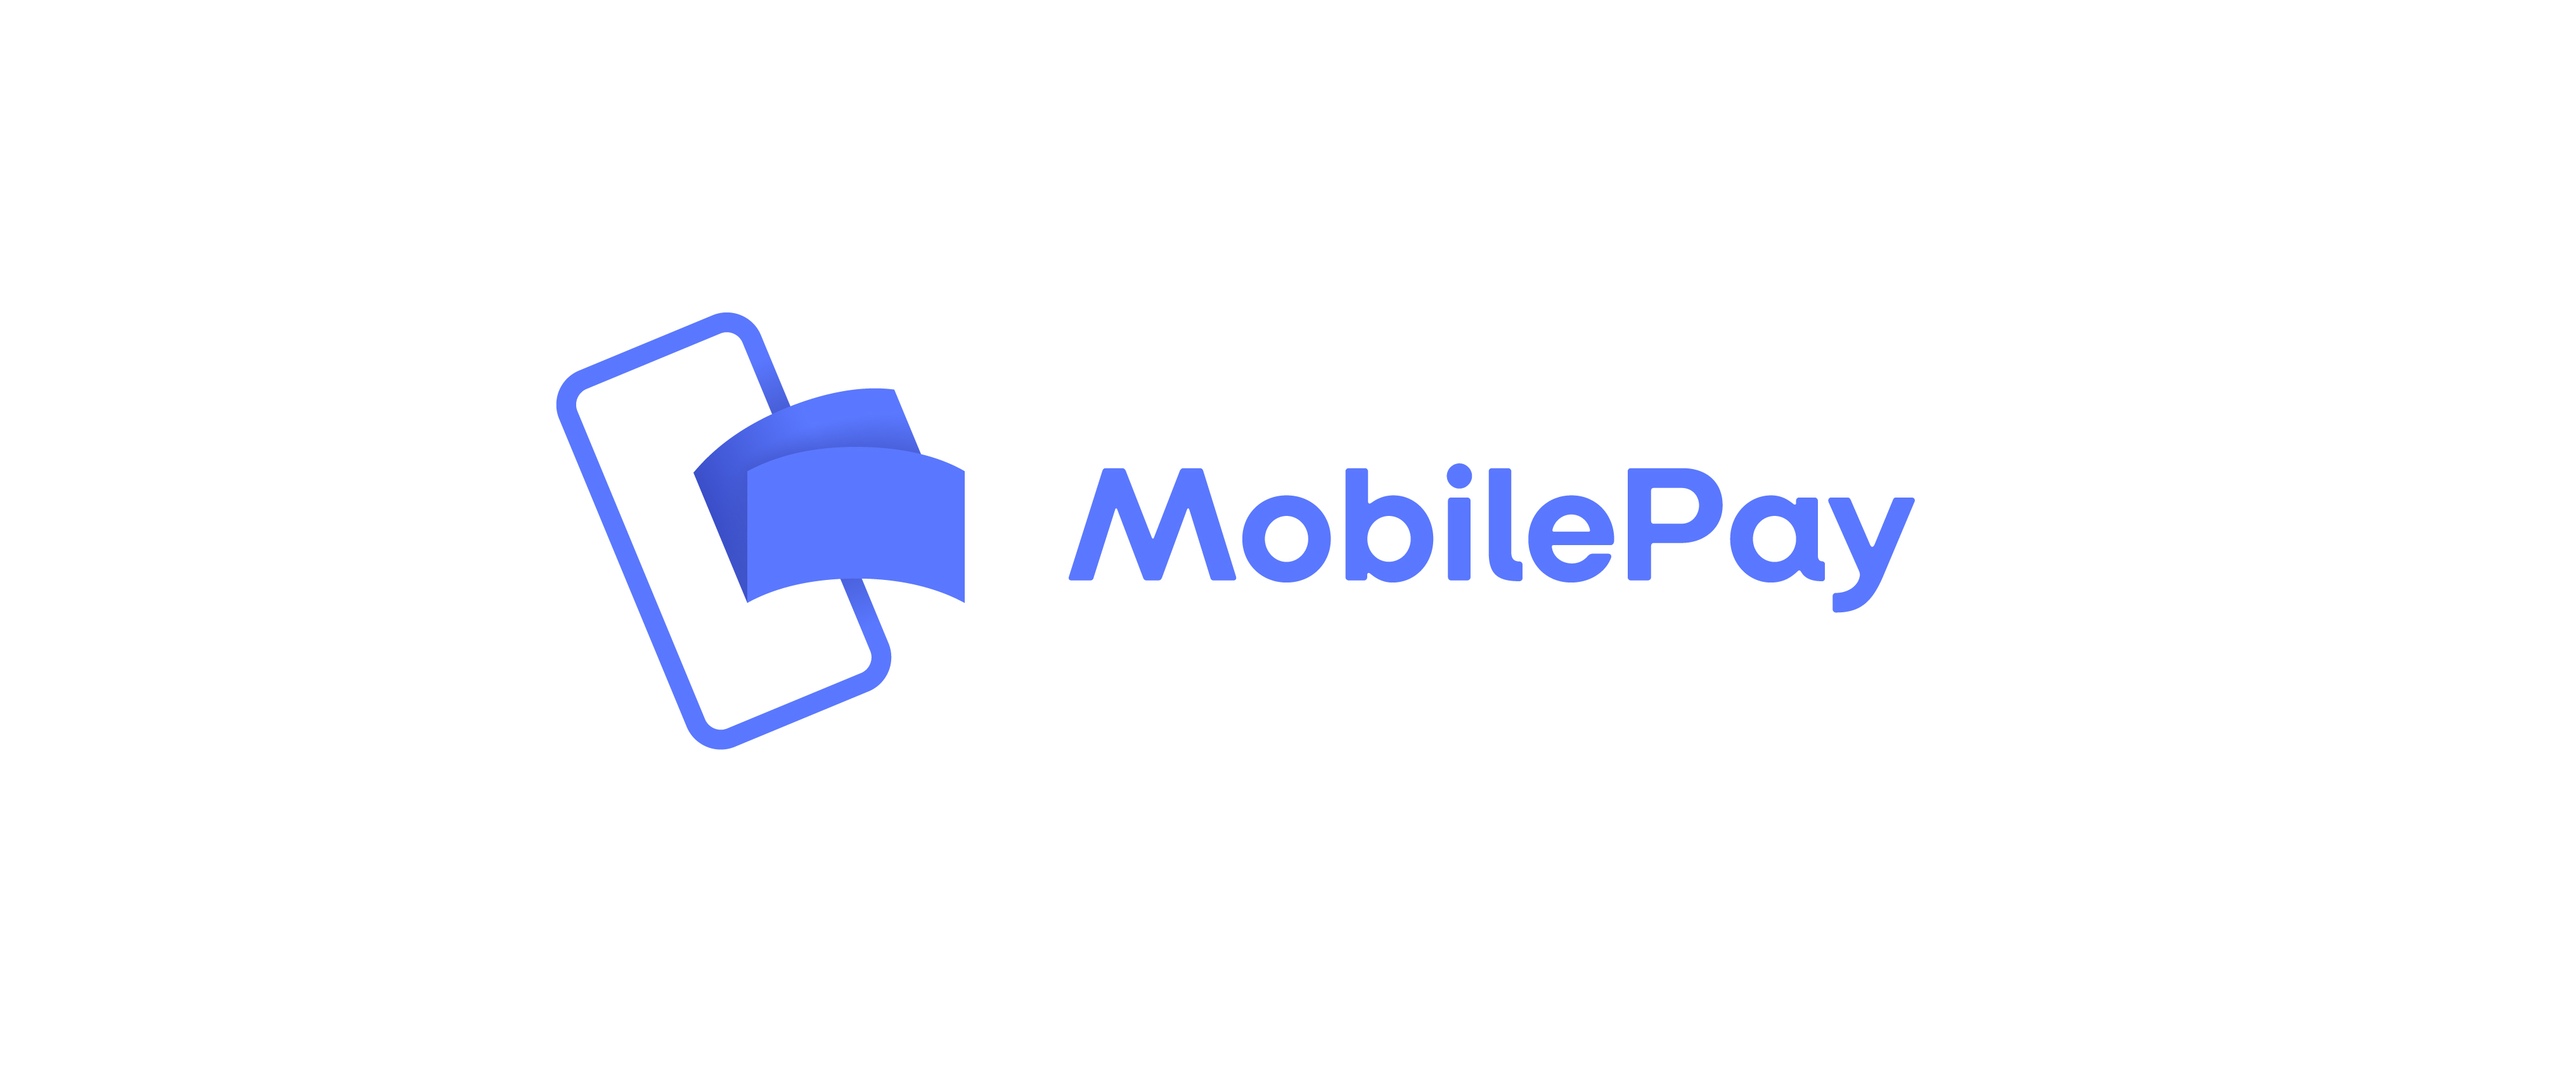 MobilePay ændrer design og logo - MereMobil.dk